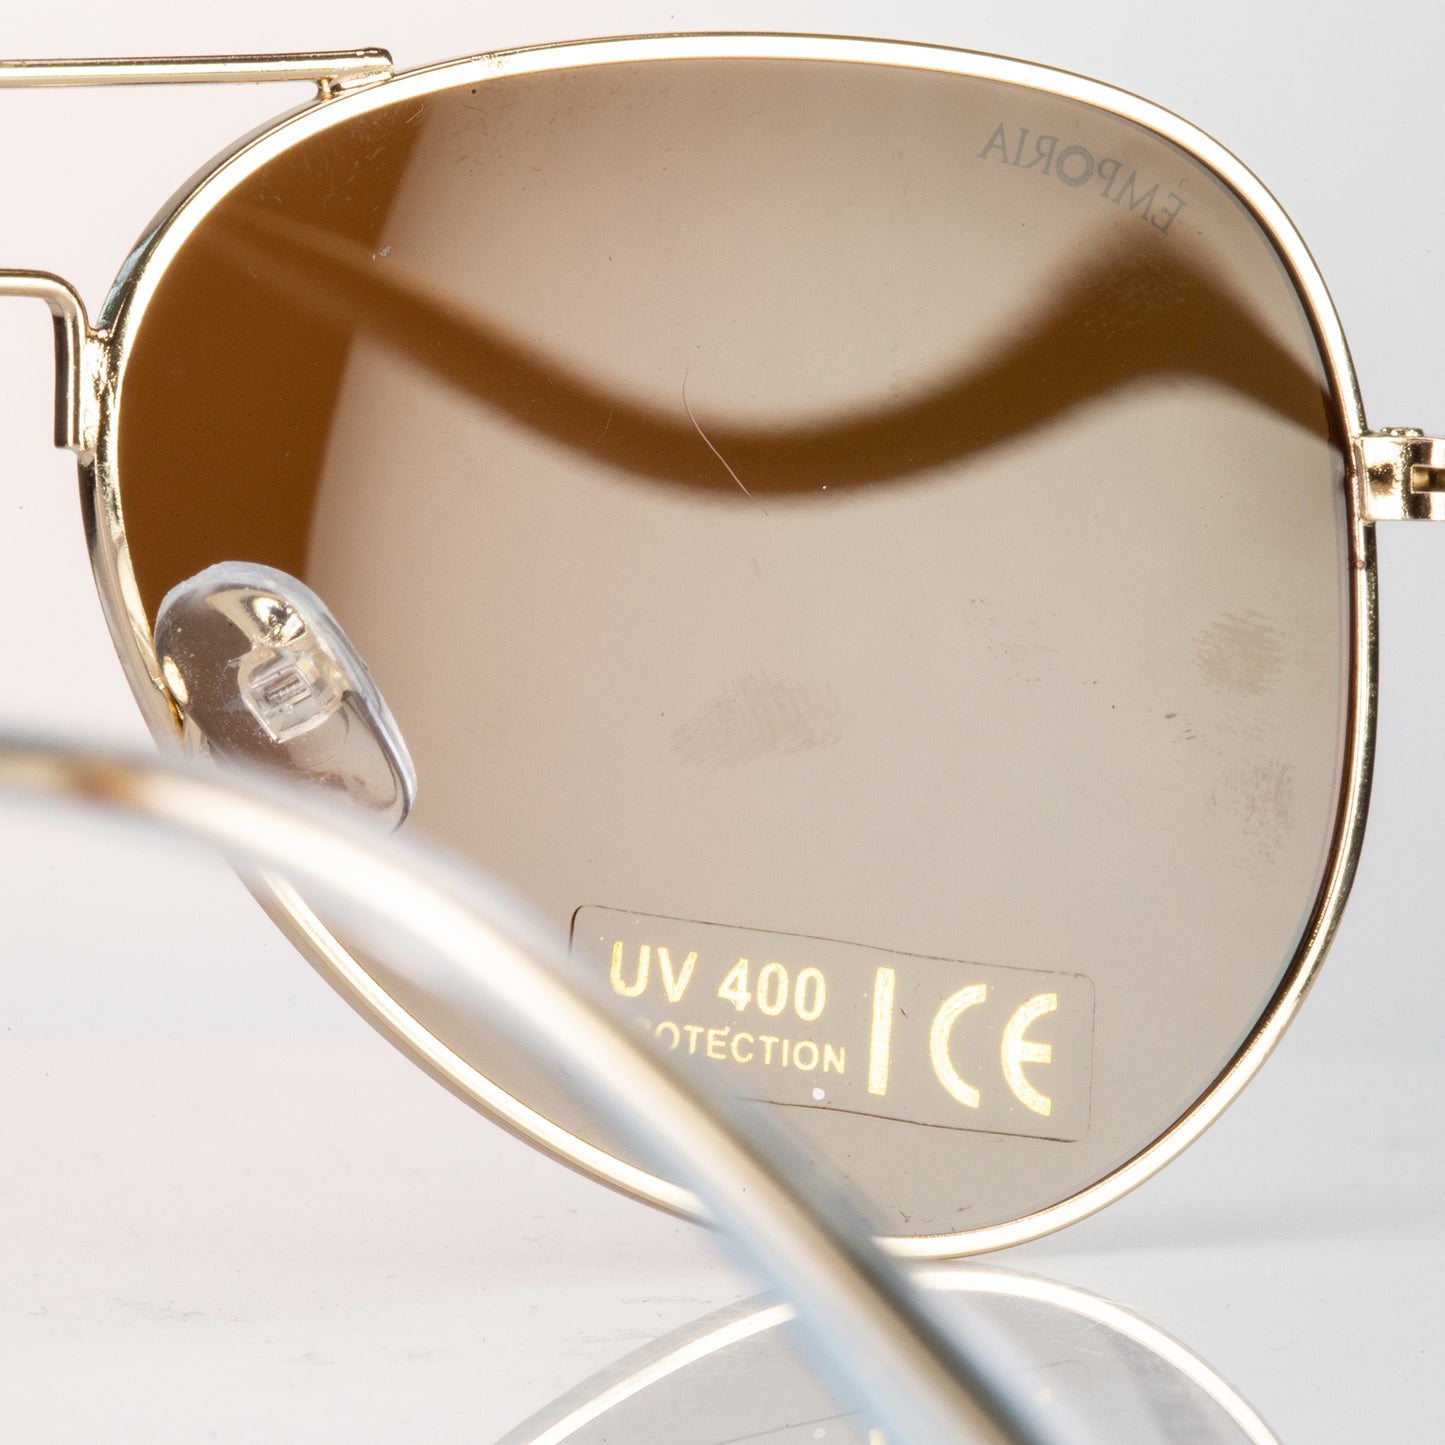 Emporia Italy - Okulary przeciwsłoneczne Aviator "PUSTYNIA", polaryzacyjne okulary przeciwsłoneczne z twardym etui i ściereczką do czyszczenia, jasnobrązowe soczewki, złota oprawka